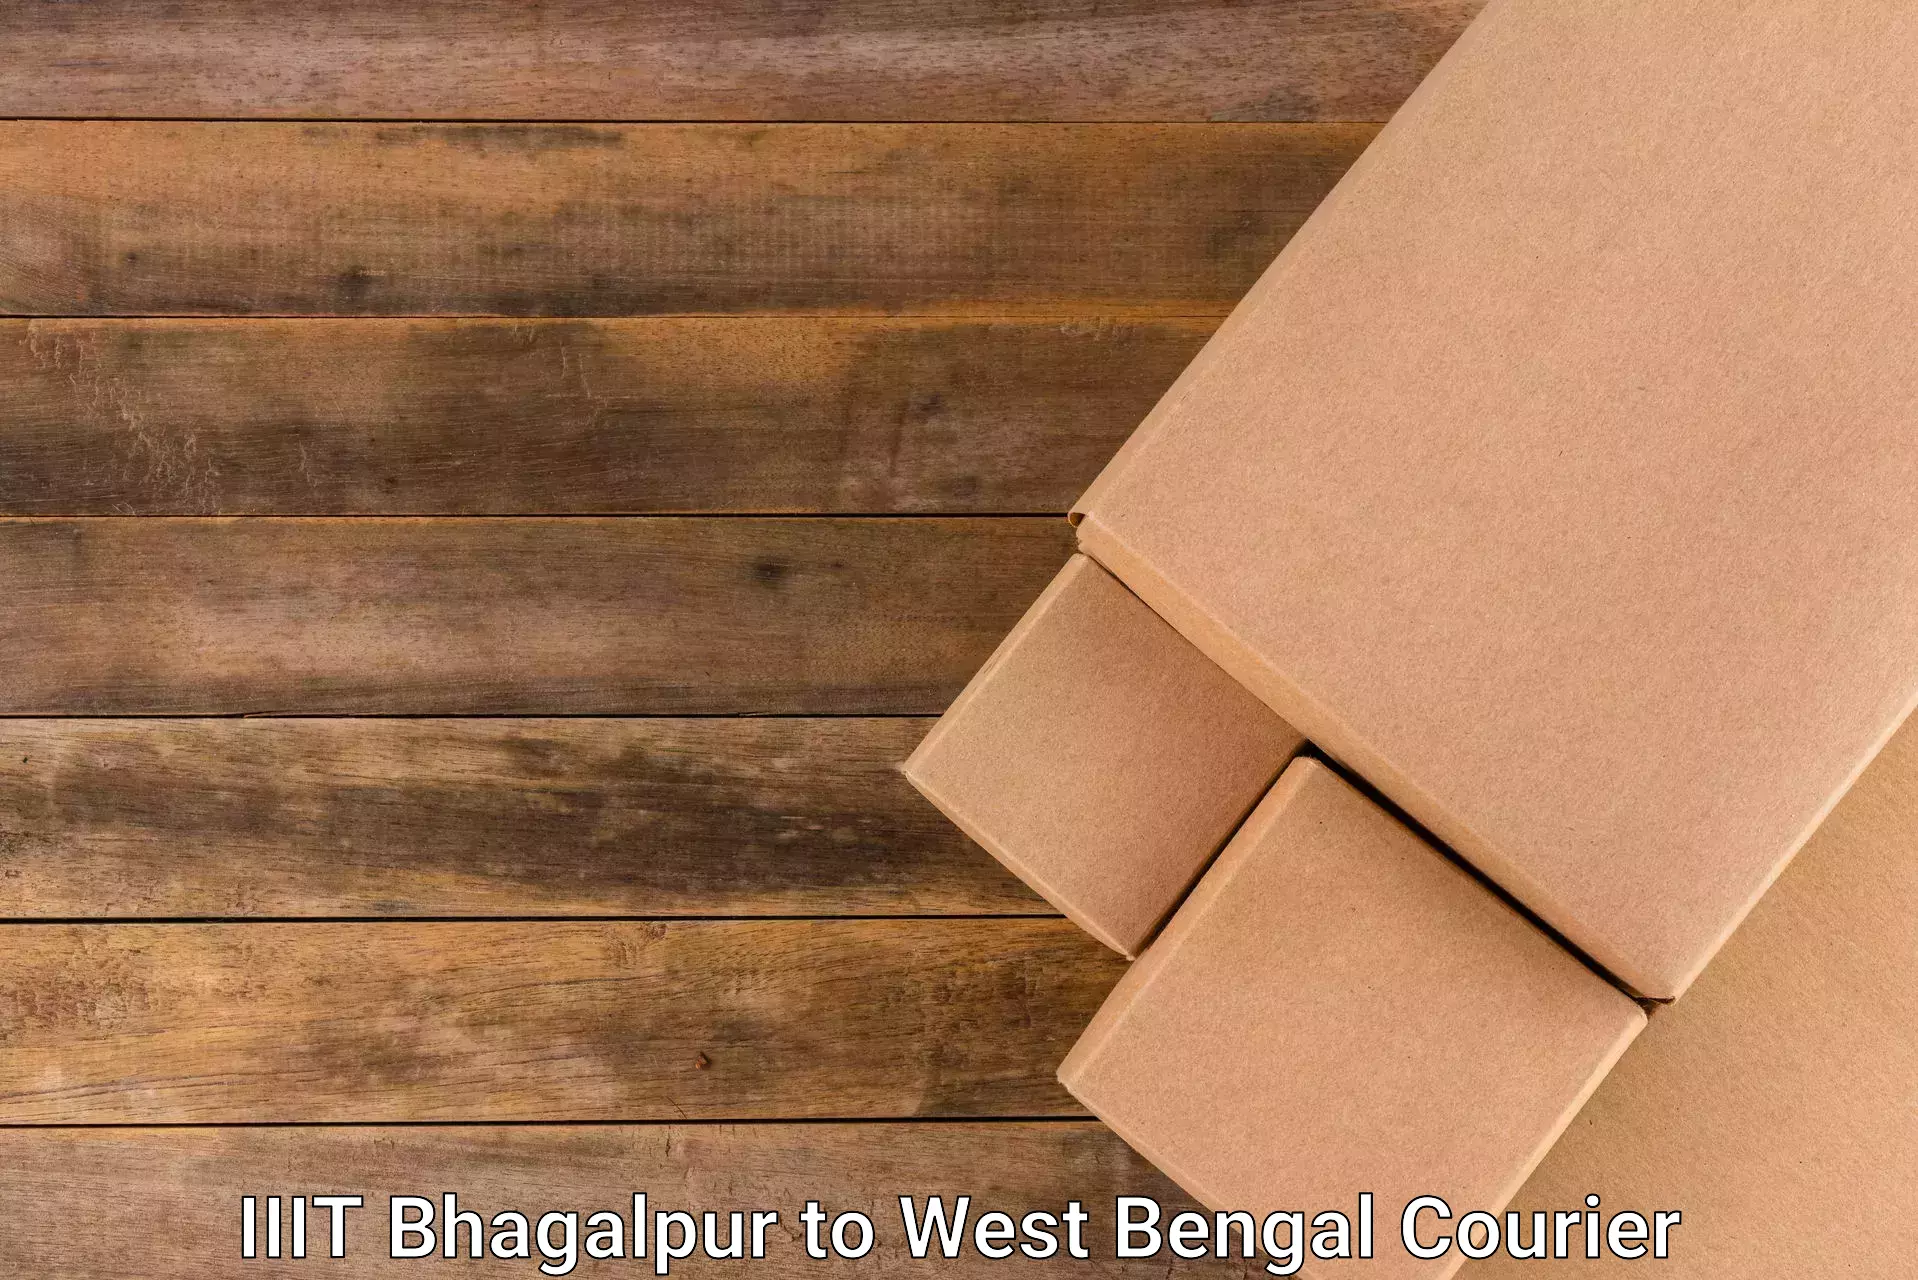 24-hour courier service IIIT Bhagalpur to Kalna